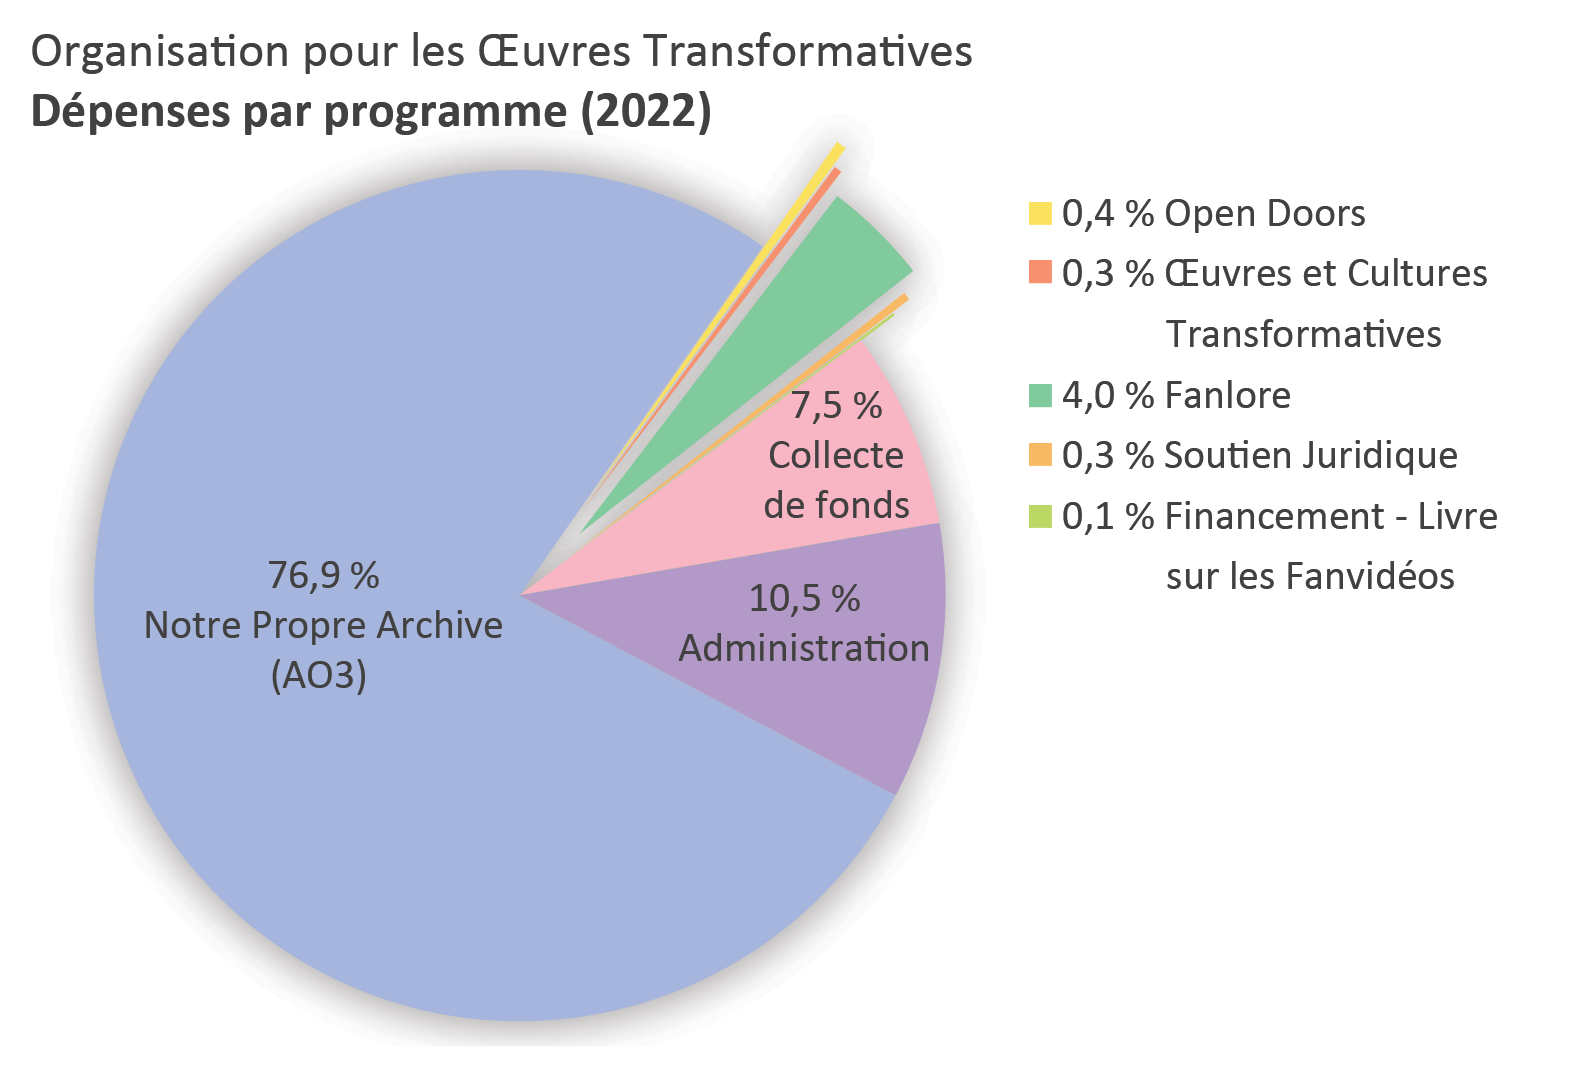 Dépenses par programme : Archive of Our Own : 76,9 %. Open Doors : 0,4 %. Transformative Works and Cultures : 0,3%. Fanlore : 4,0 %. Soutien Juridique : 0,3 %. Financement - Livre sur les Fanvidéos : 0,1%. Administration : 10,5 %. Collecte de fonds : 7,5 %.